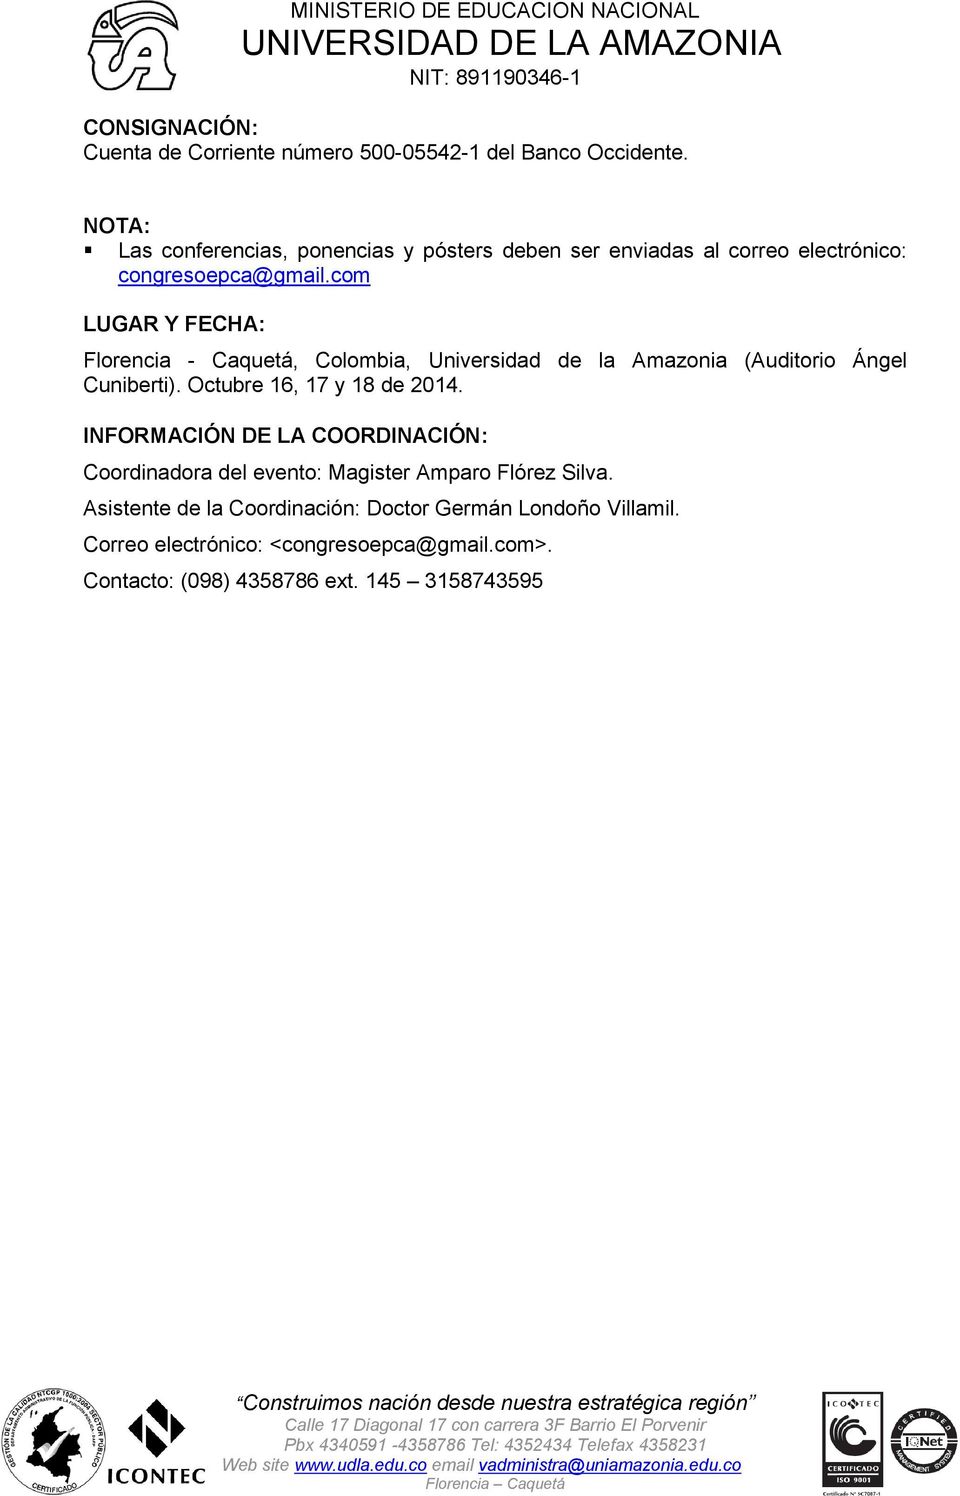 com LUGAR Y FECHA: Florencia - Caquetá, Colombia, Universidad de la Amazonia (Auditorio Ángel Cuniberti). Octubre 16, 17 y 18 de 2014.